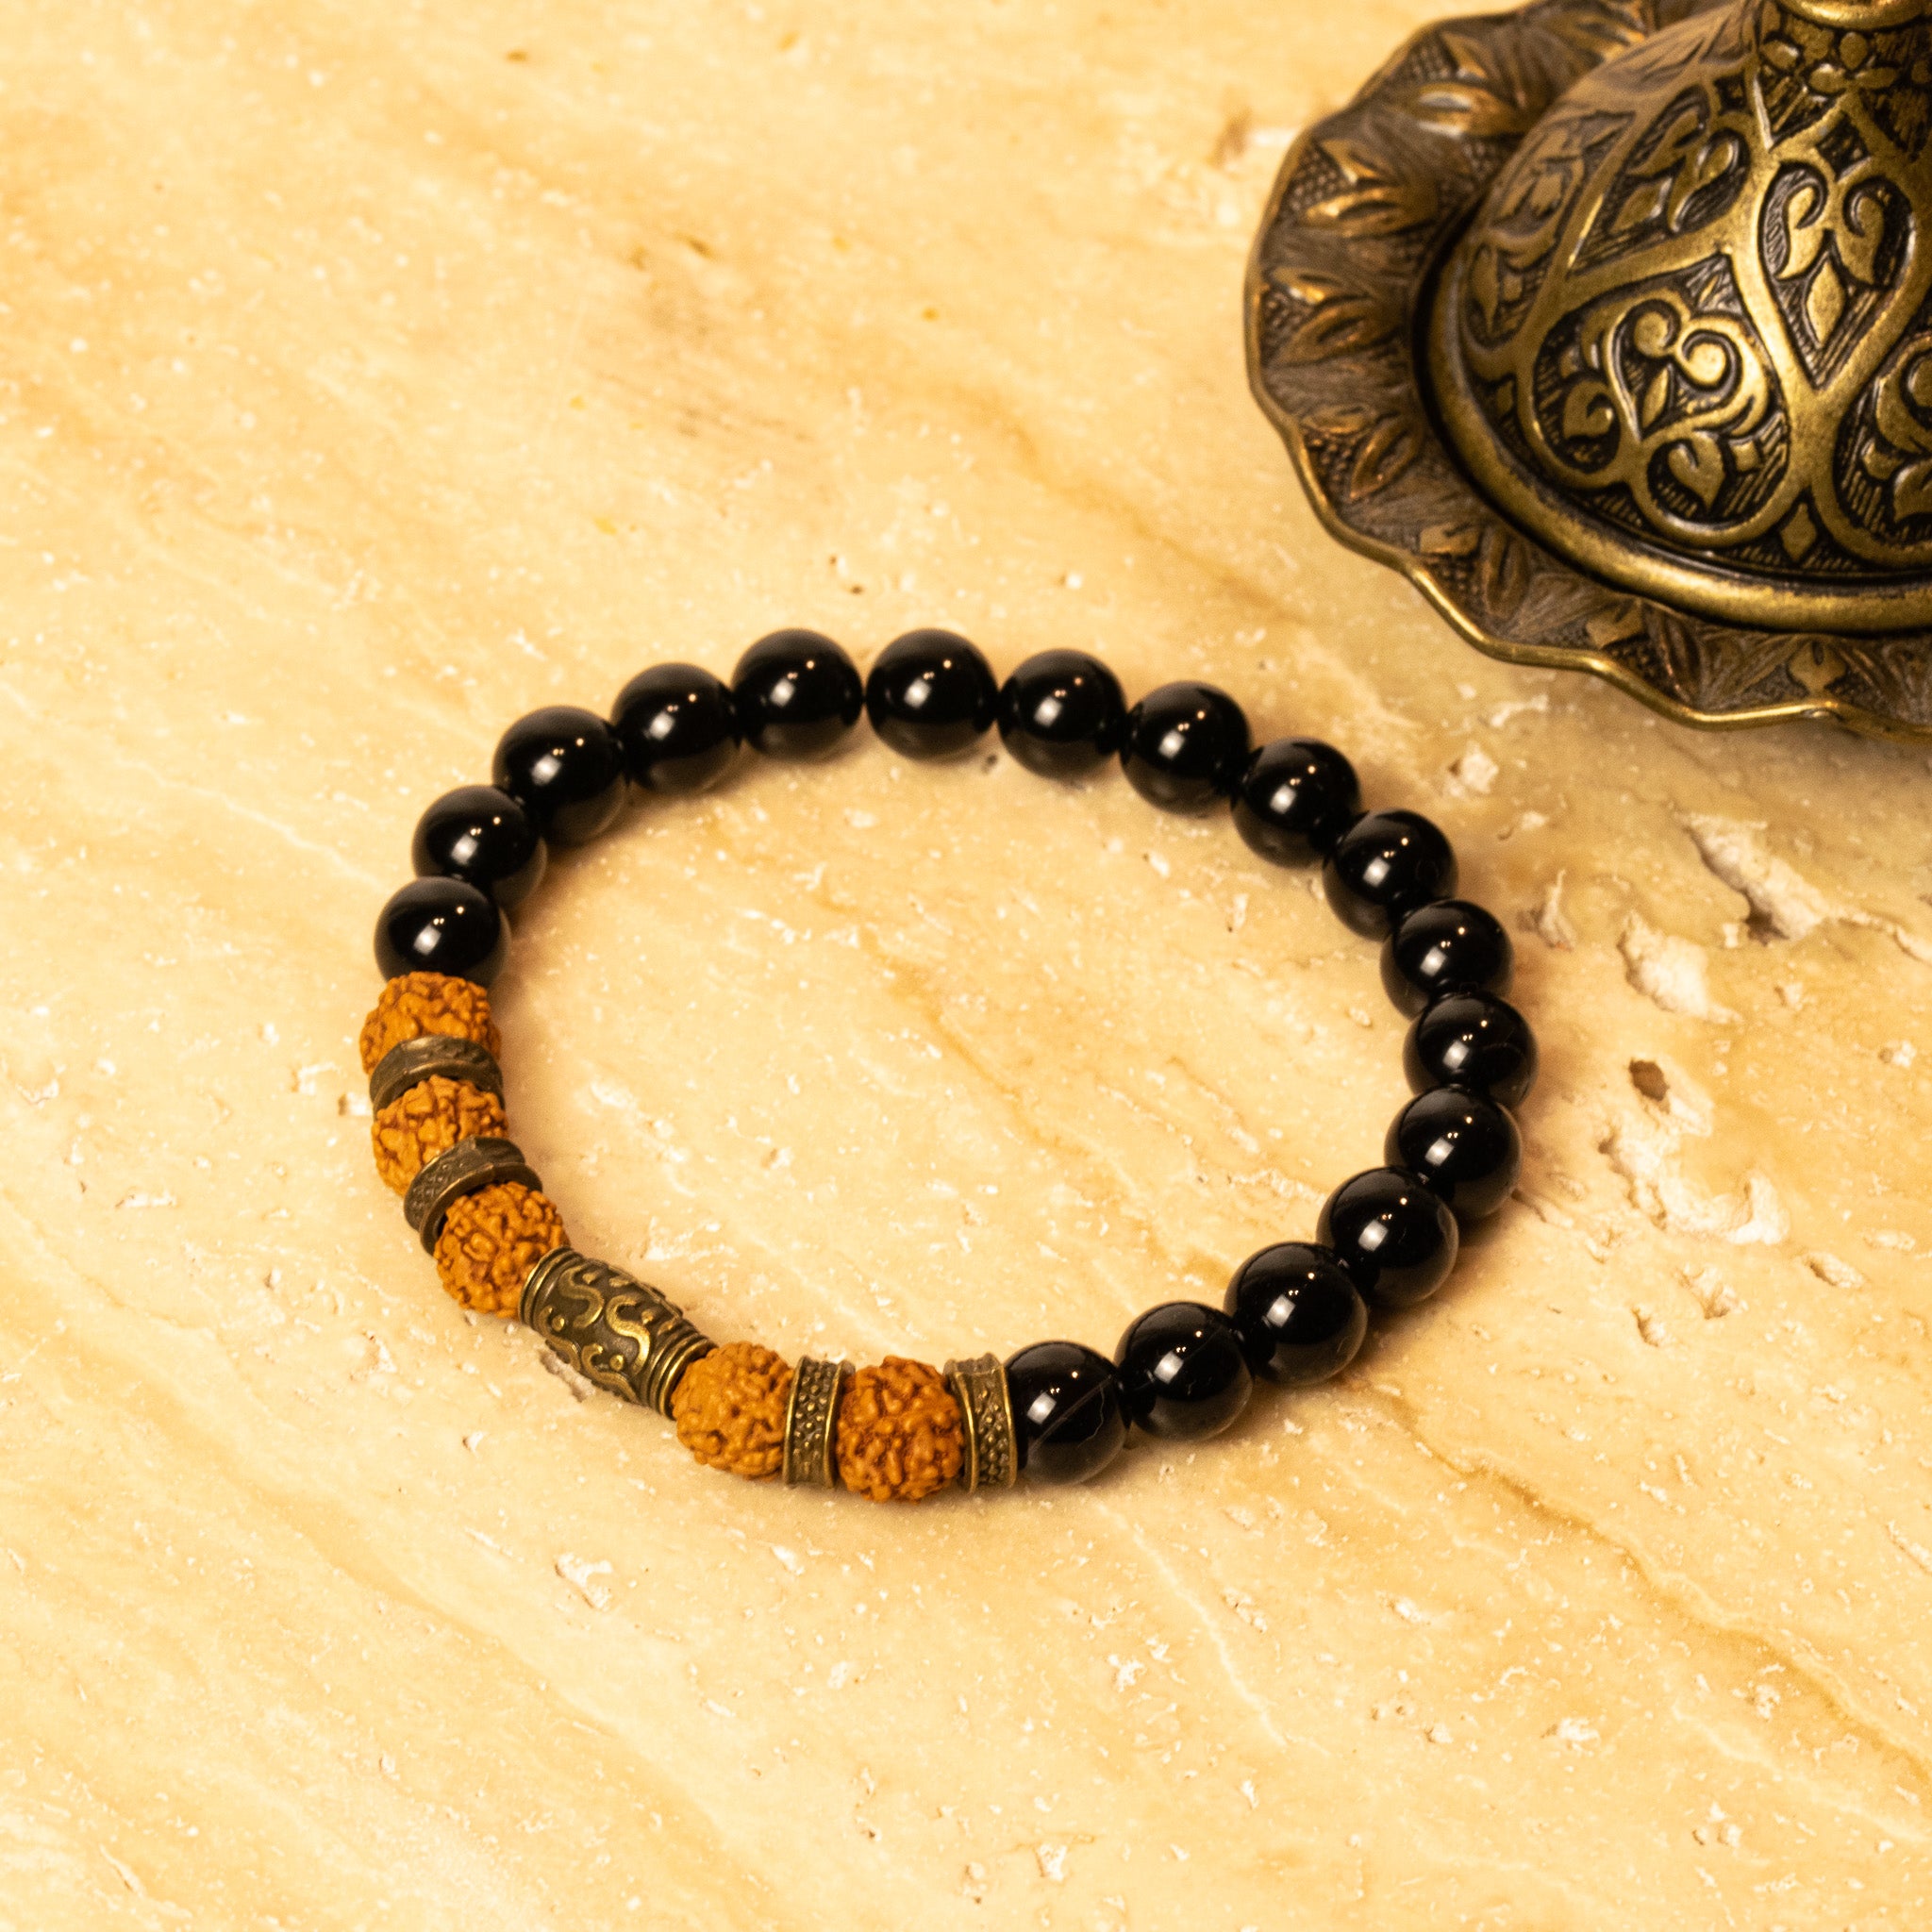 Rudraksh and Black Onyx bracelet for success